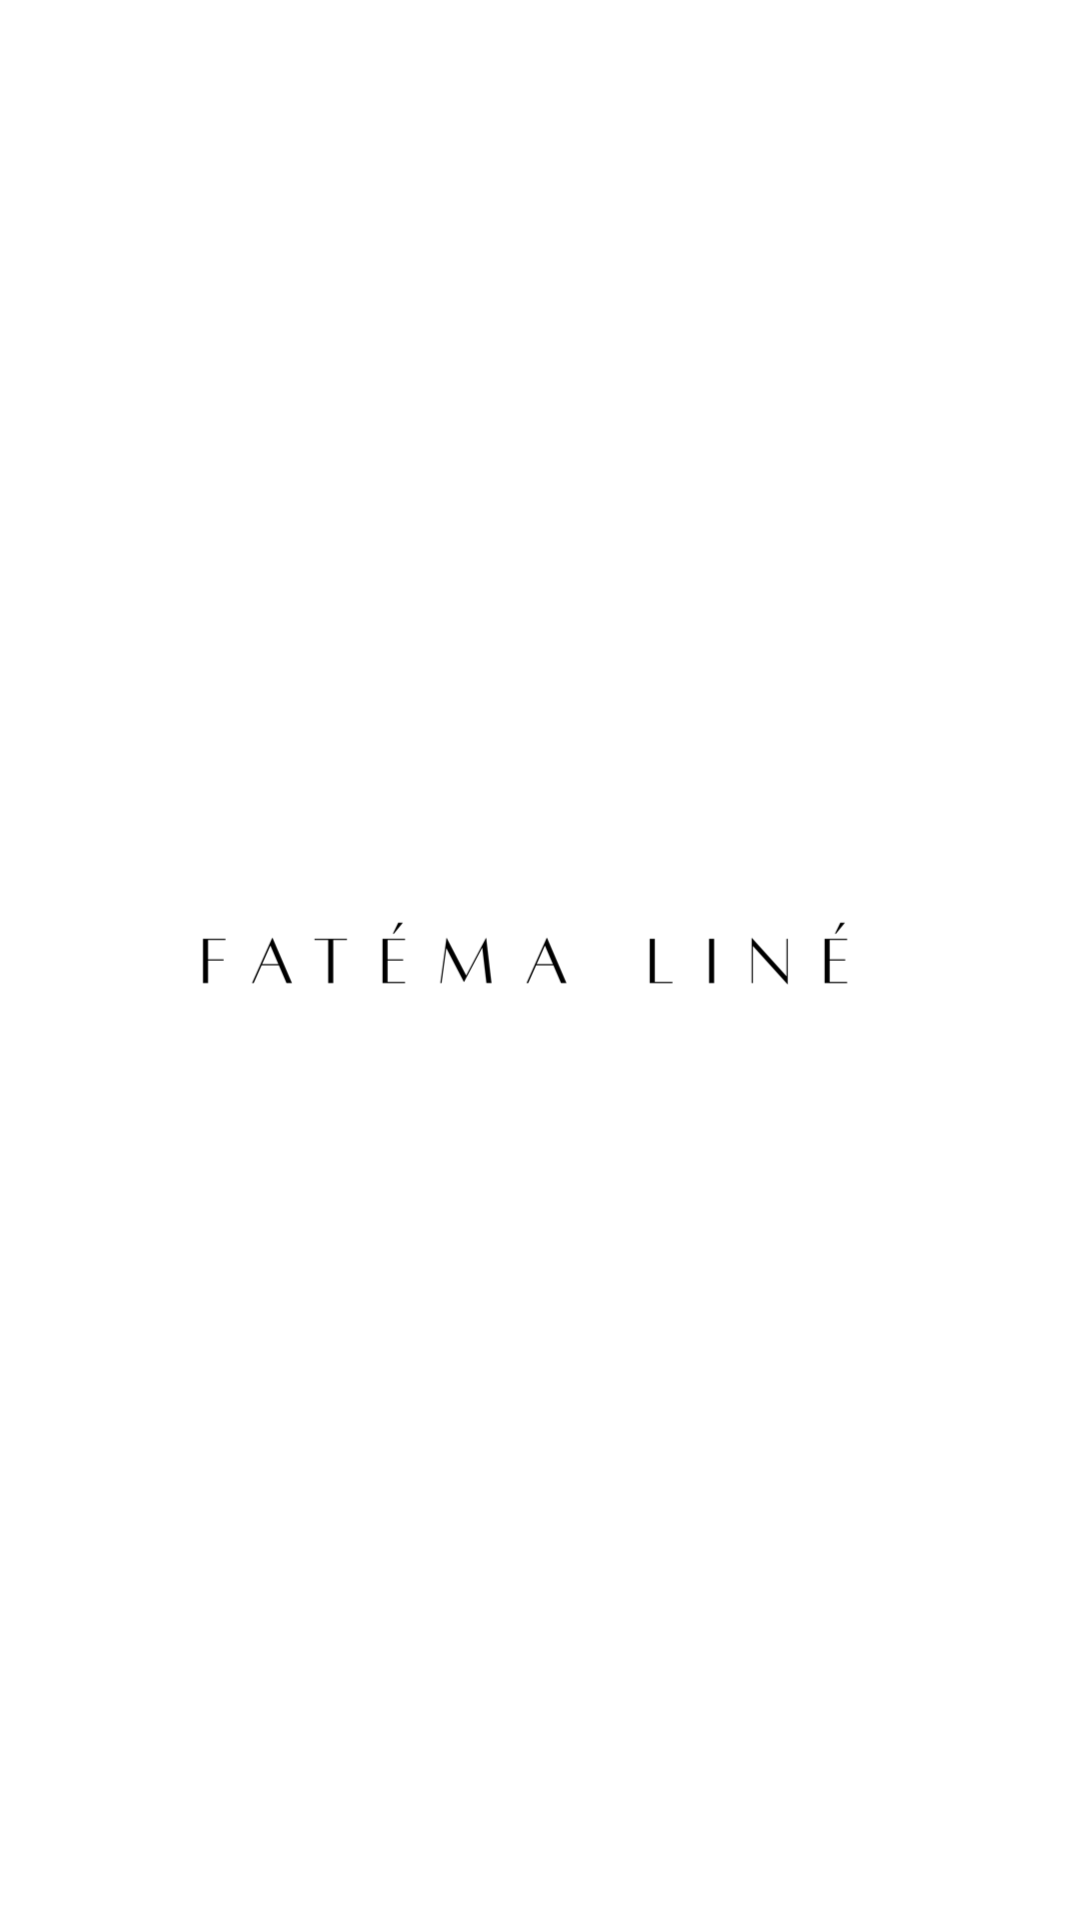 Fatema Line